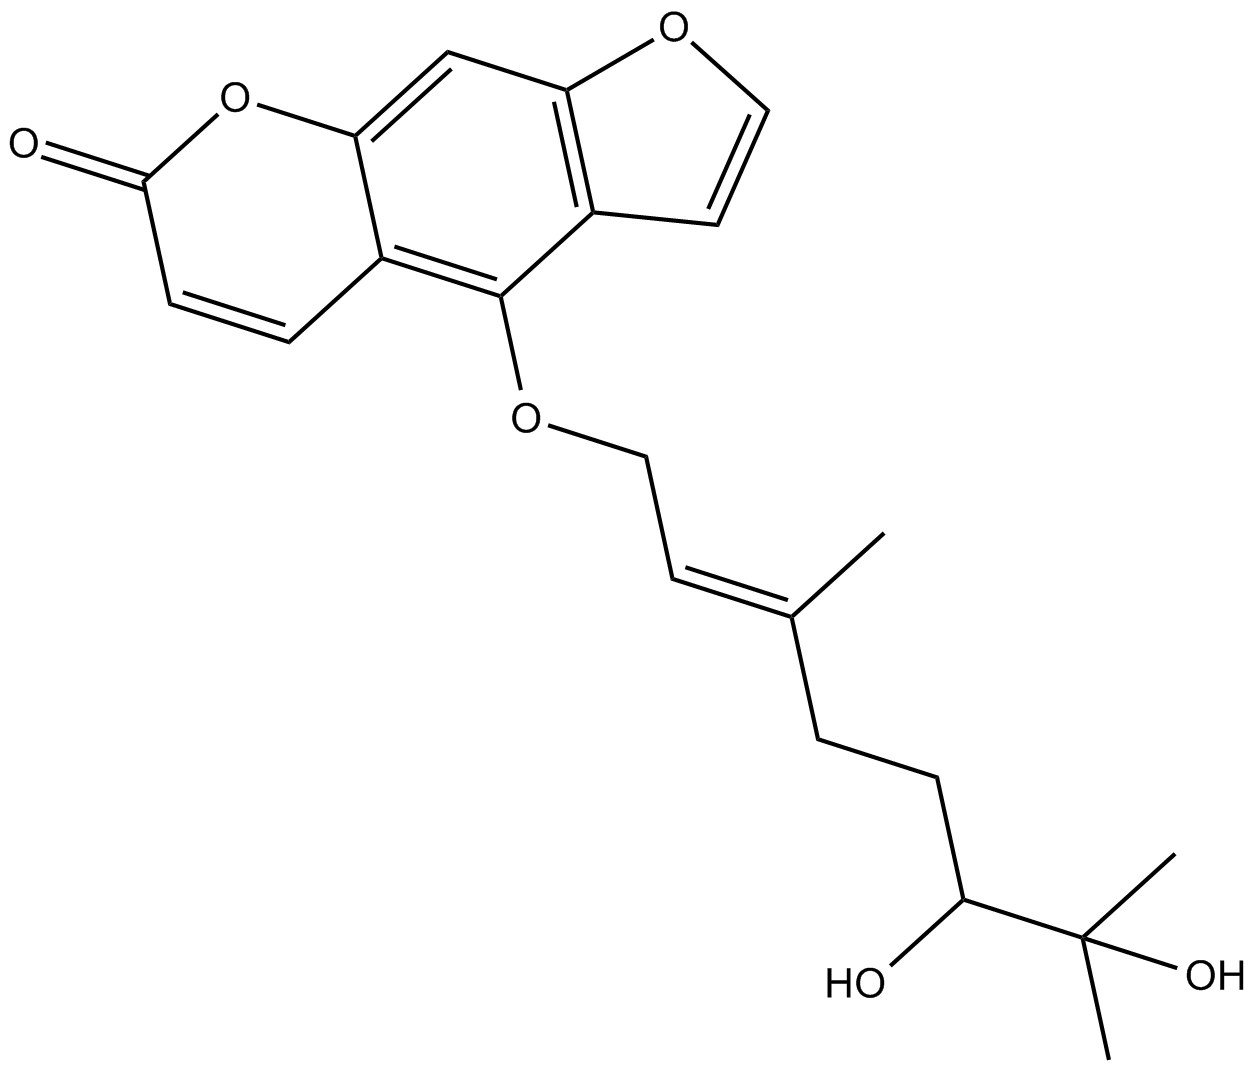 6,7-dihydroxy Bergamottin